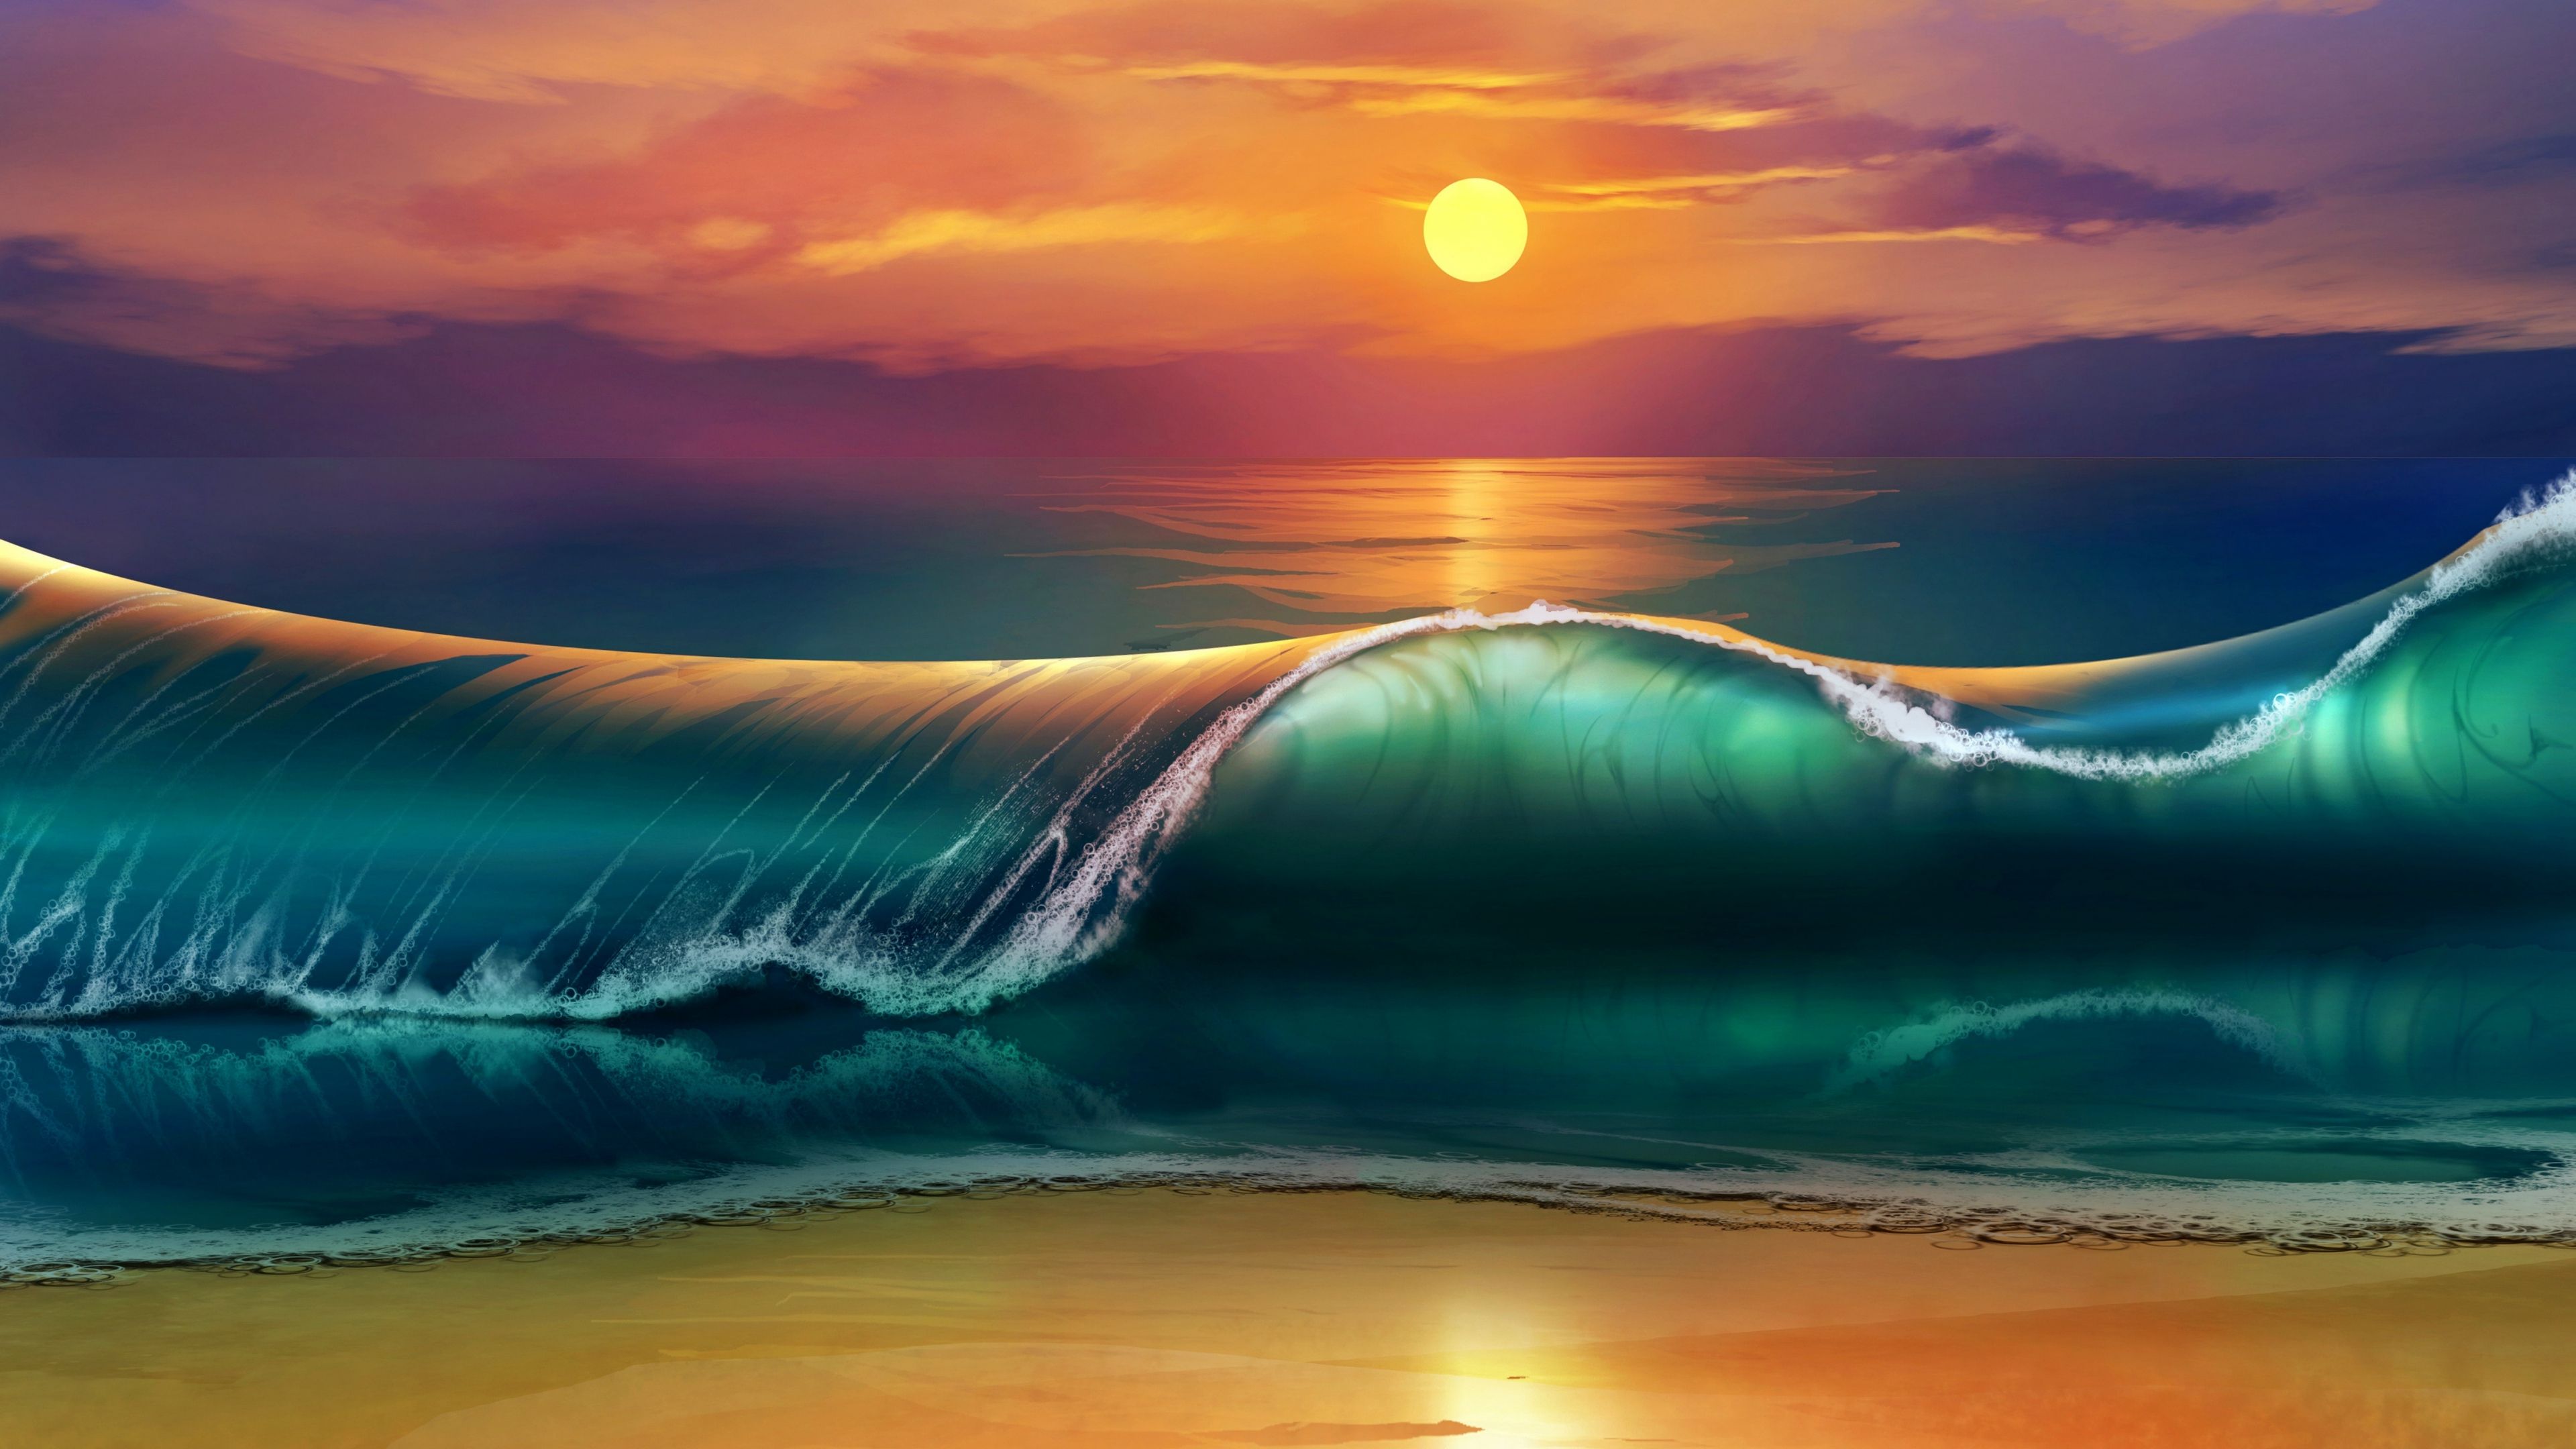 Hình nền  Bản vẽ bức vẽ hình minh họa sóng biển tiếng Nhật Nghệ thuật  cổ điển Làn sóng lớn tắt Kanagawa NGHỆ THUẬT làn sóng Phác hoạ  4335x2990  rsd 